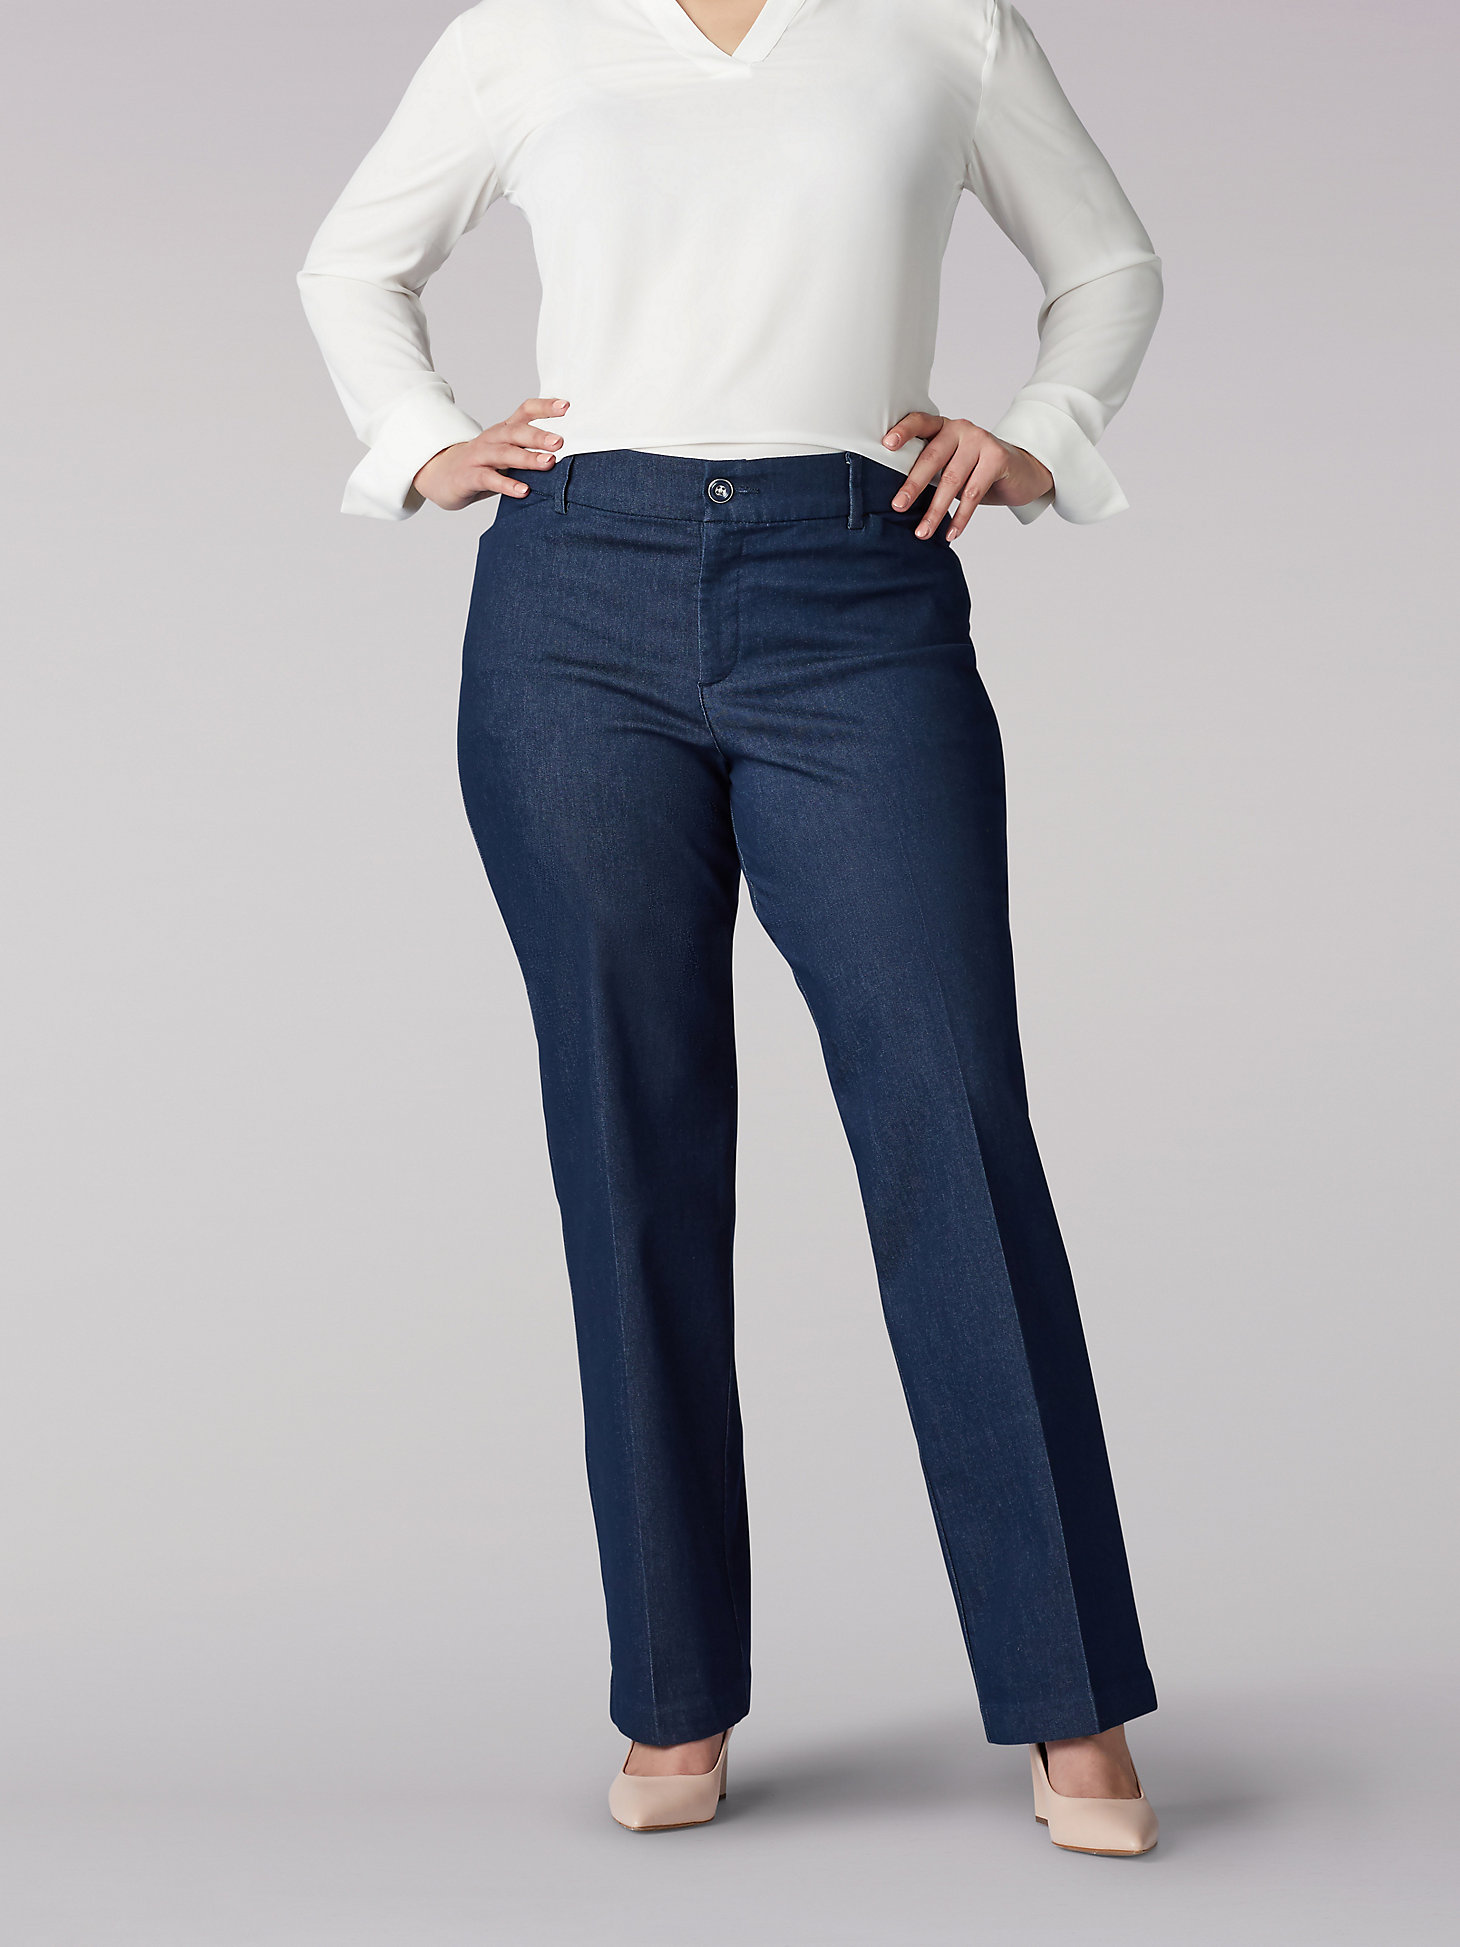 Womens Plus Size Jeans Straight Leg Stretch Denim Ladies Plain Trousers Pants 